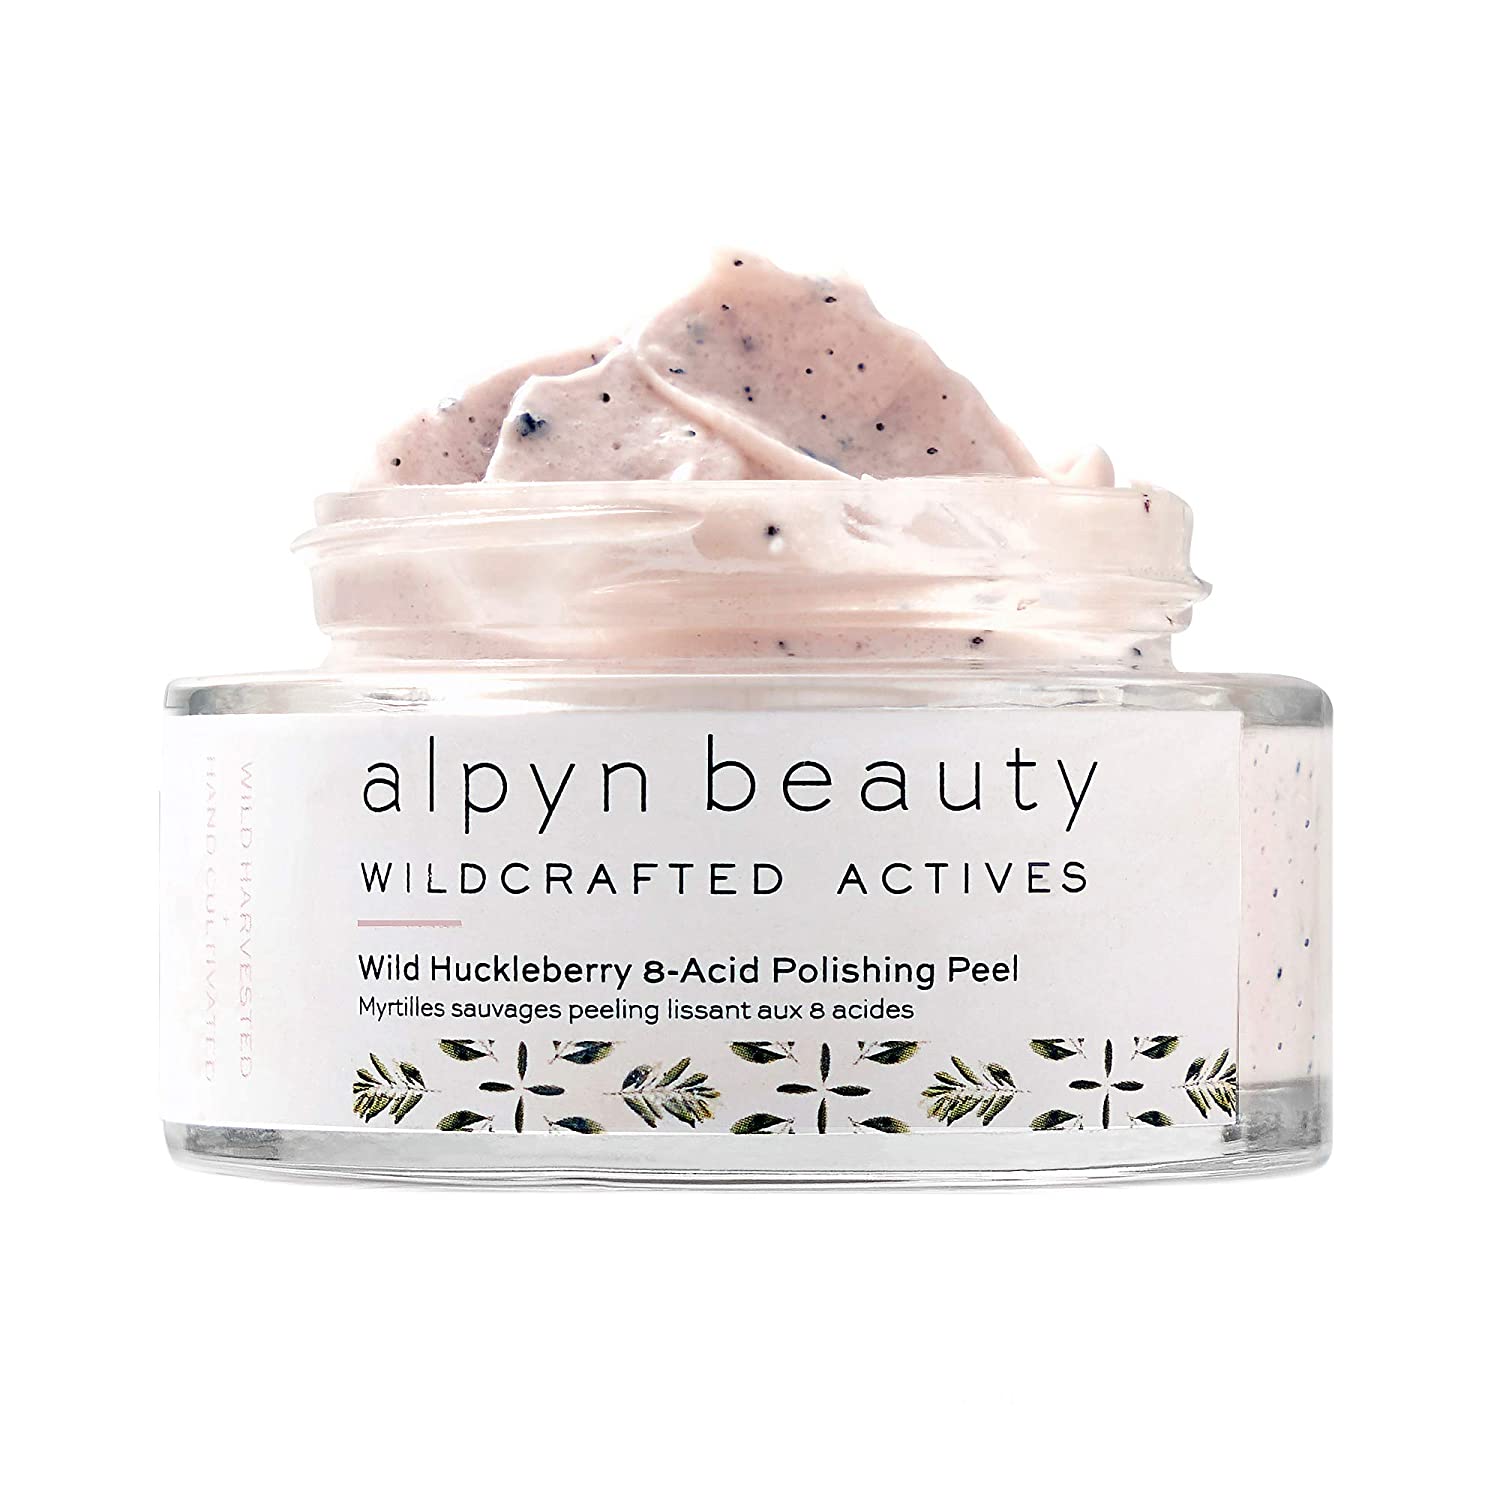 Alpyn Beauty Huckleberry 8-Acid Polishing Peel